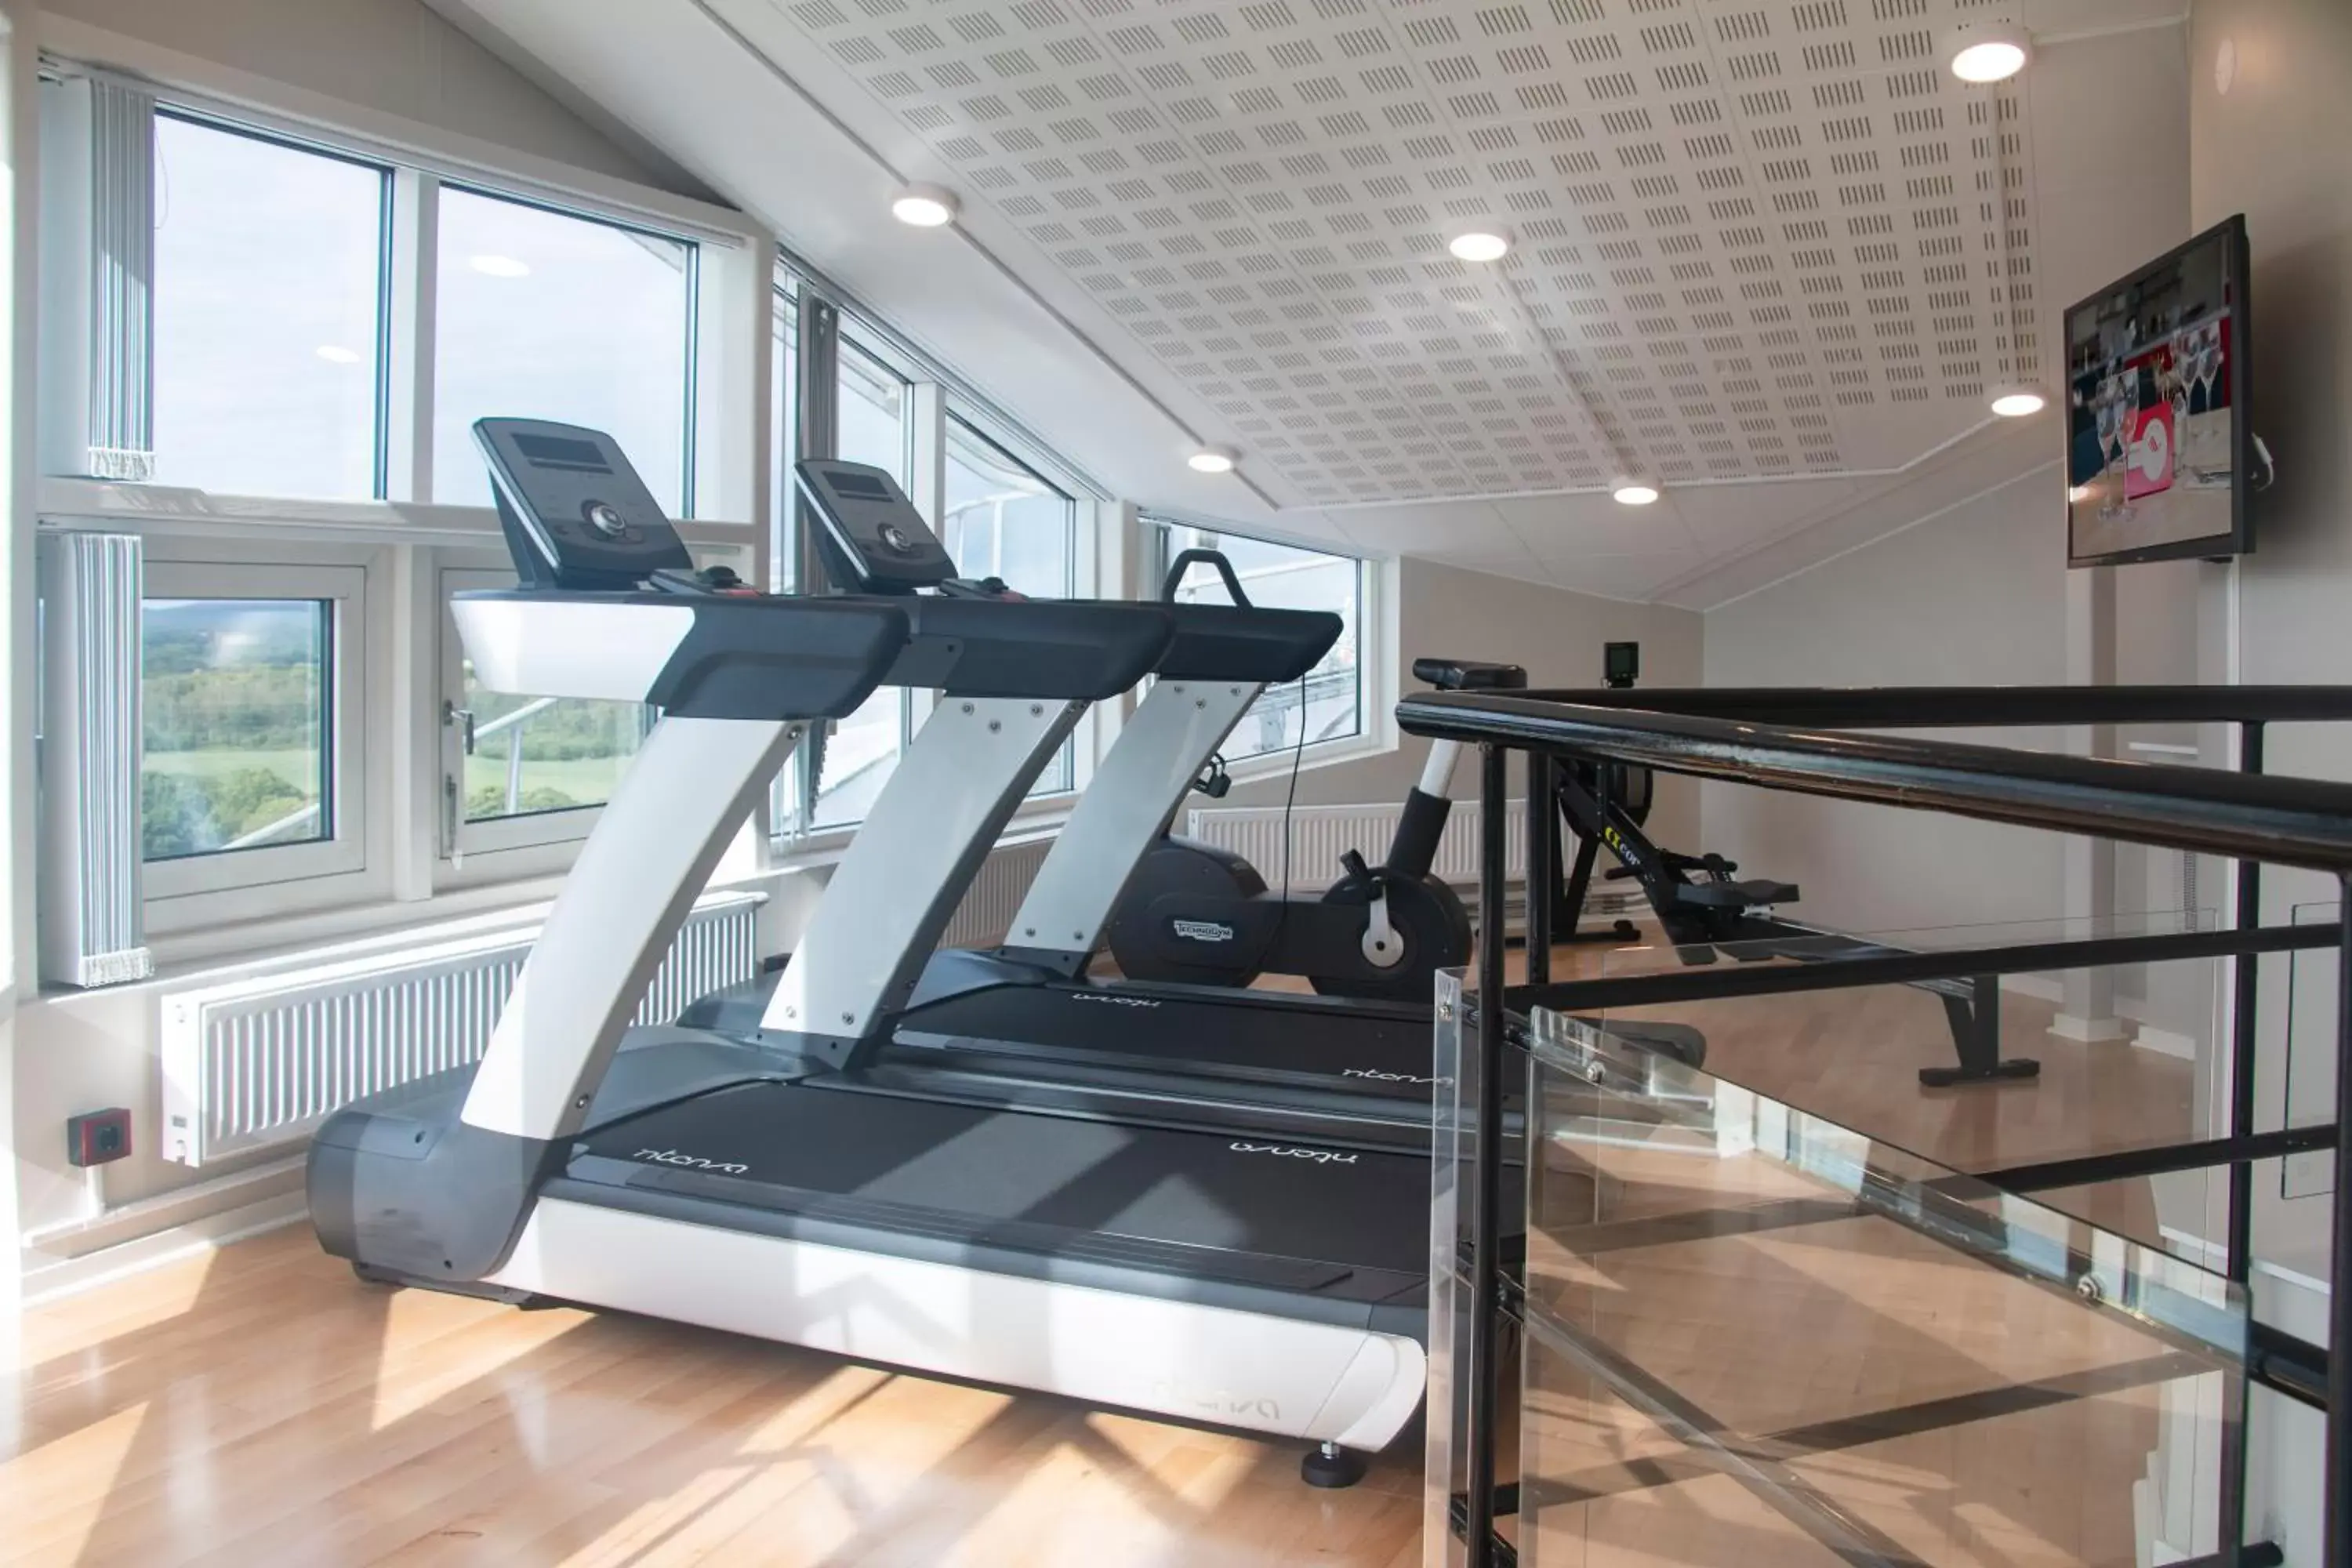 Fitness centre/facilities, Fitness Center/Facilities in Good Morning+ Halmstad